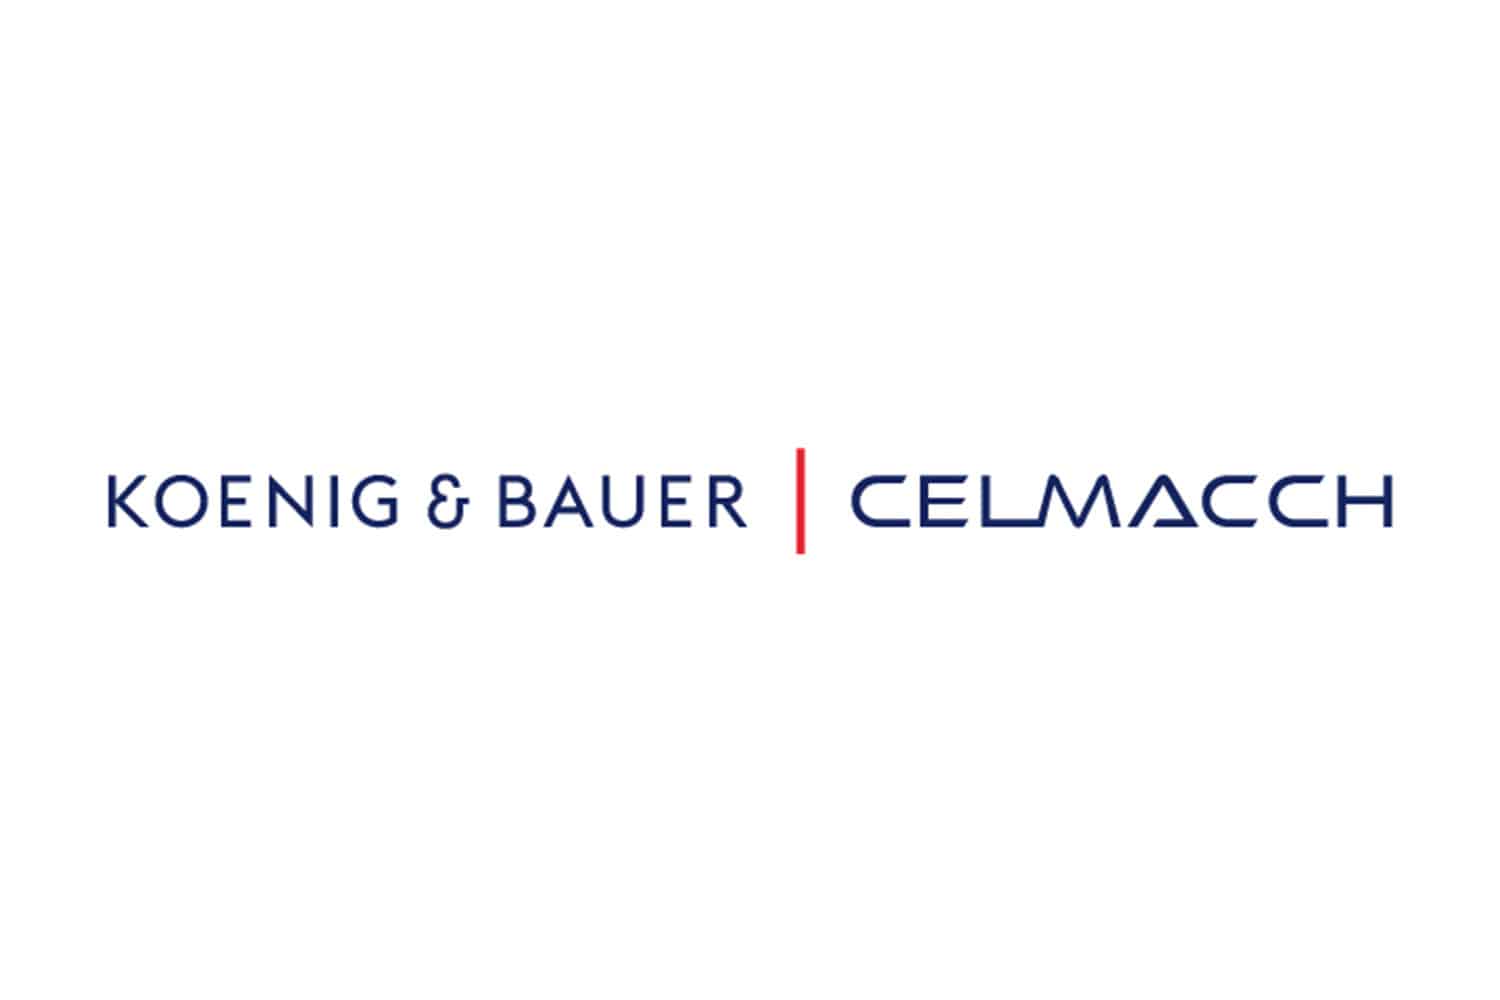 Nach der Übernahme von 49 Prozent der Anteile firmiert Celmacch künftig unter dem Namen Koenig & Bauer Celmacch.